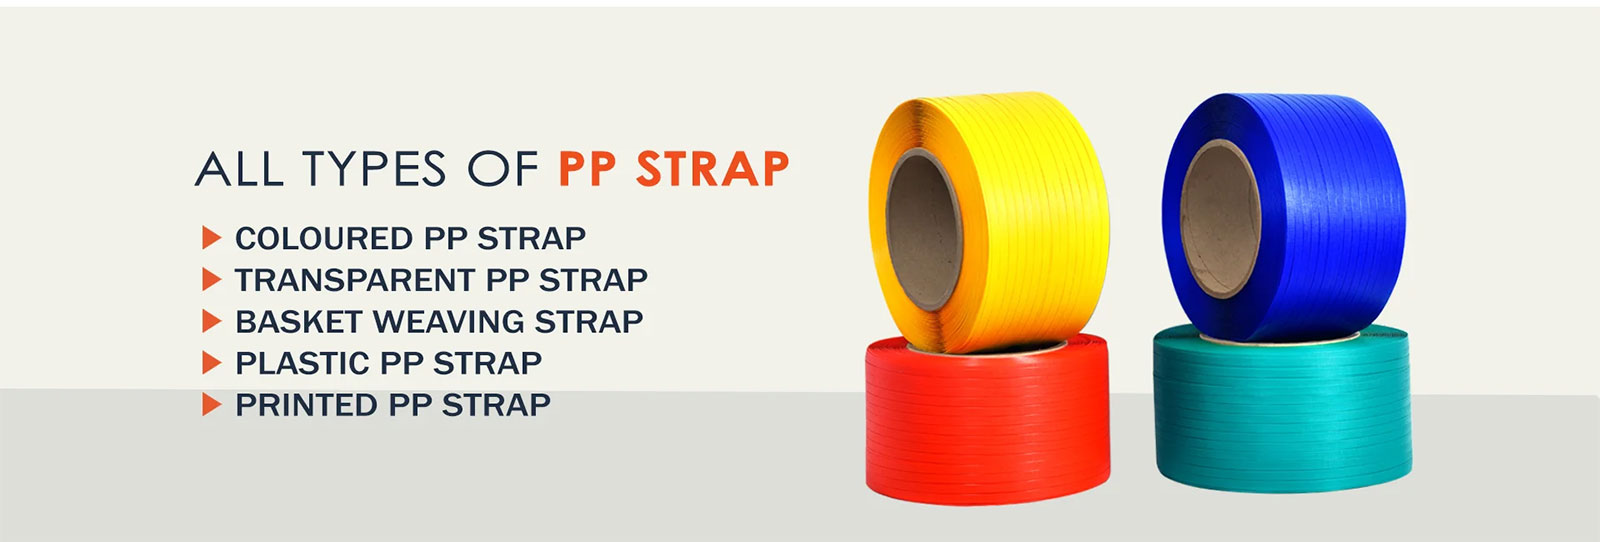 Coloured PP Strap, Transparent PP Strap, Basket Weaving Strap, Plastic PP Strap, Printed PP Strap, Manufacturer, Supplier, Ahmedabad